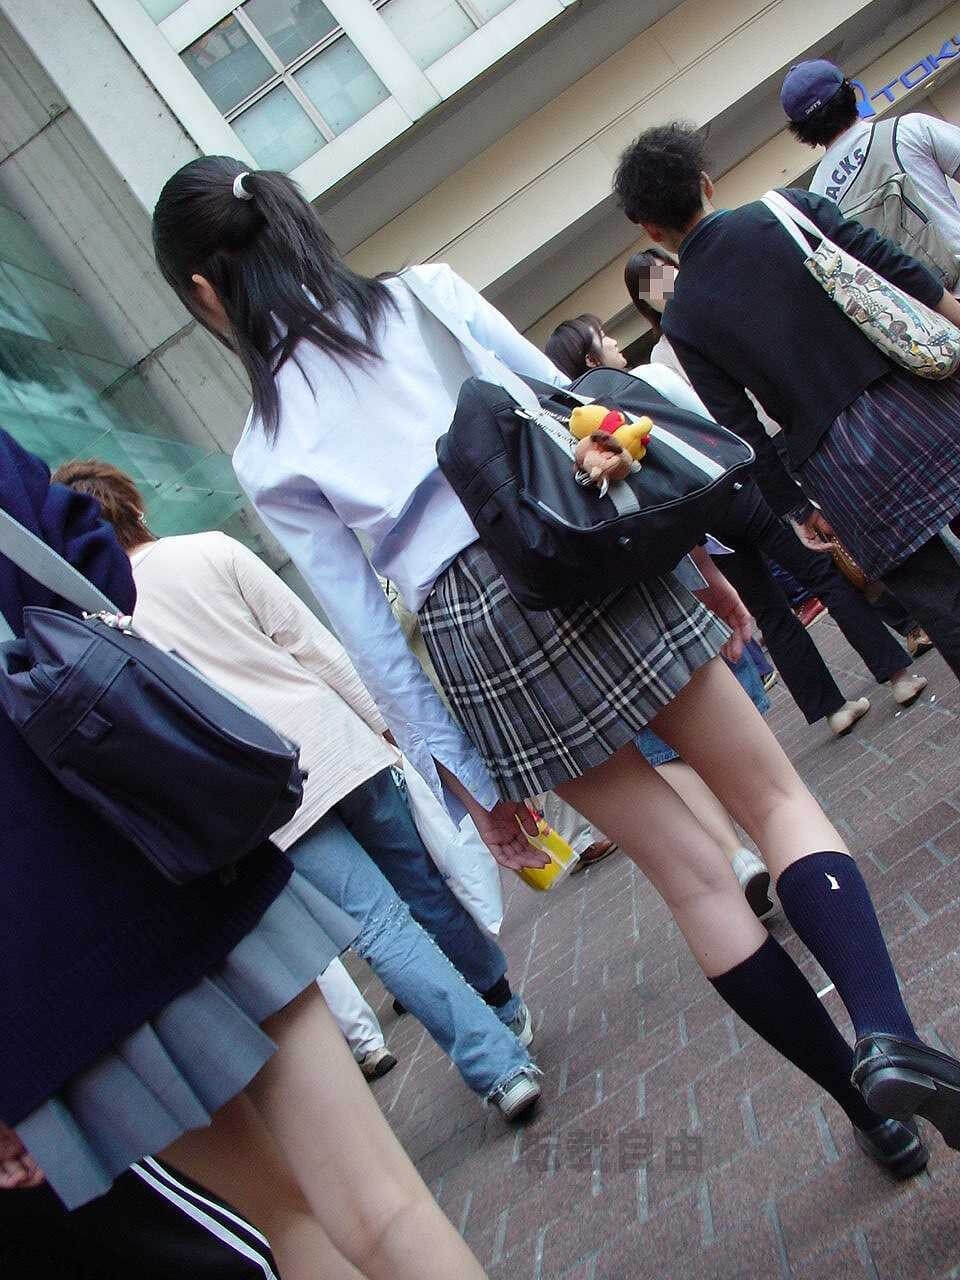 【画像】女子高生のスケスケシャツを目の前に理性を保てるか・・・